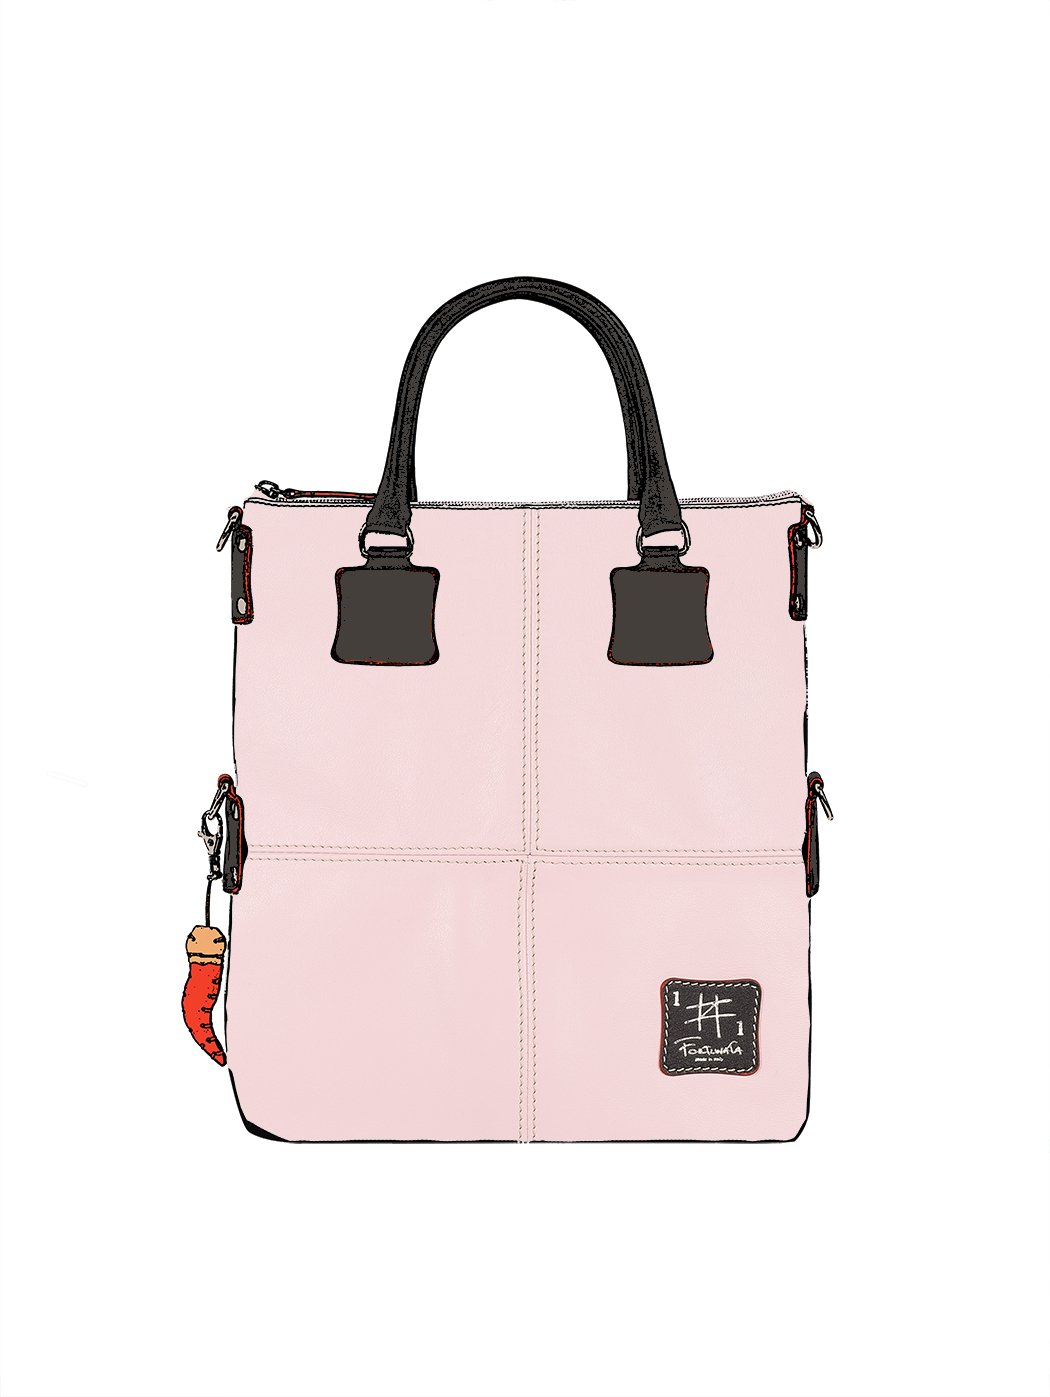 Дизайнерская сумка из коллекции Fortunata нежно-розового цвета